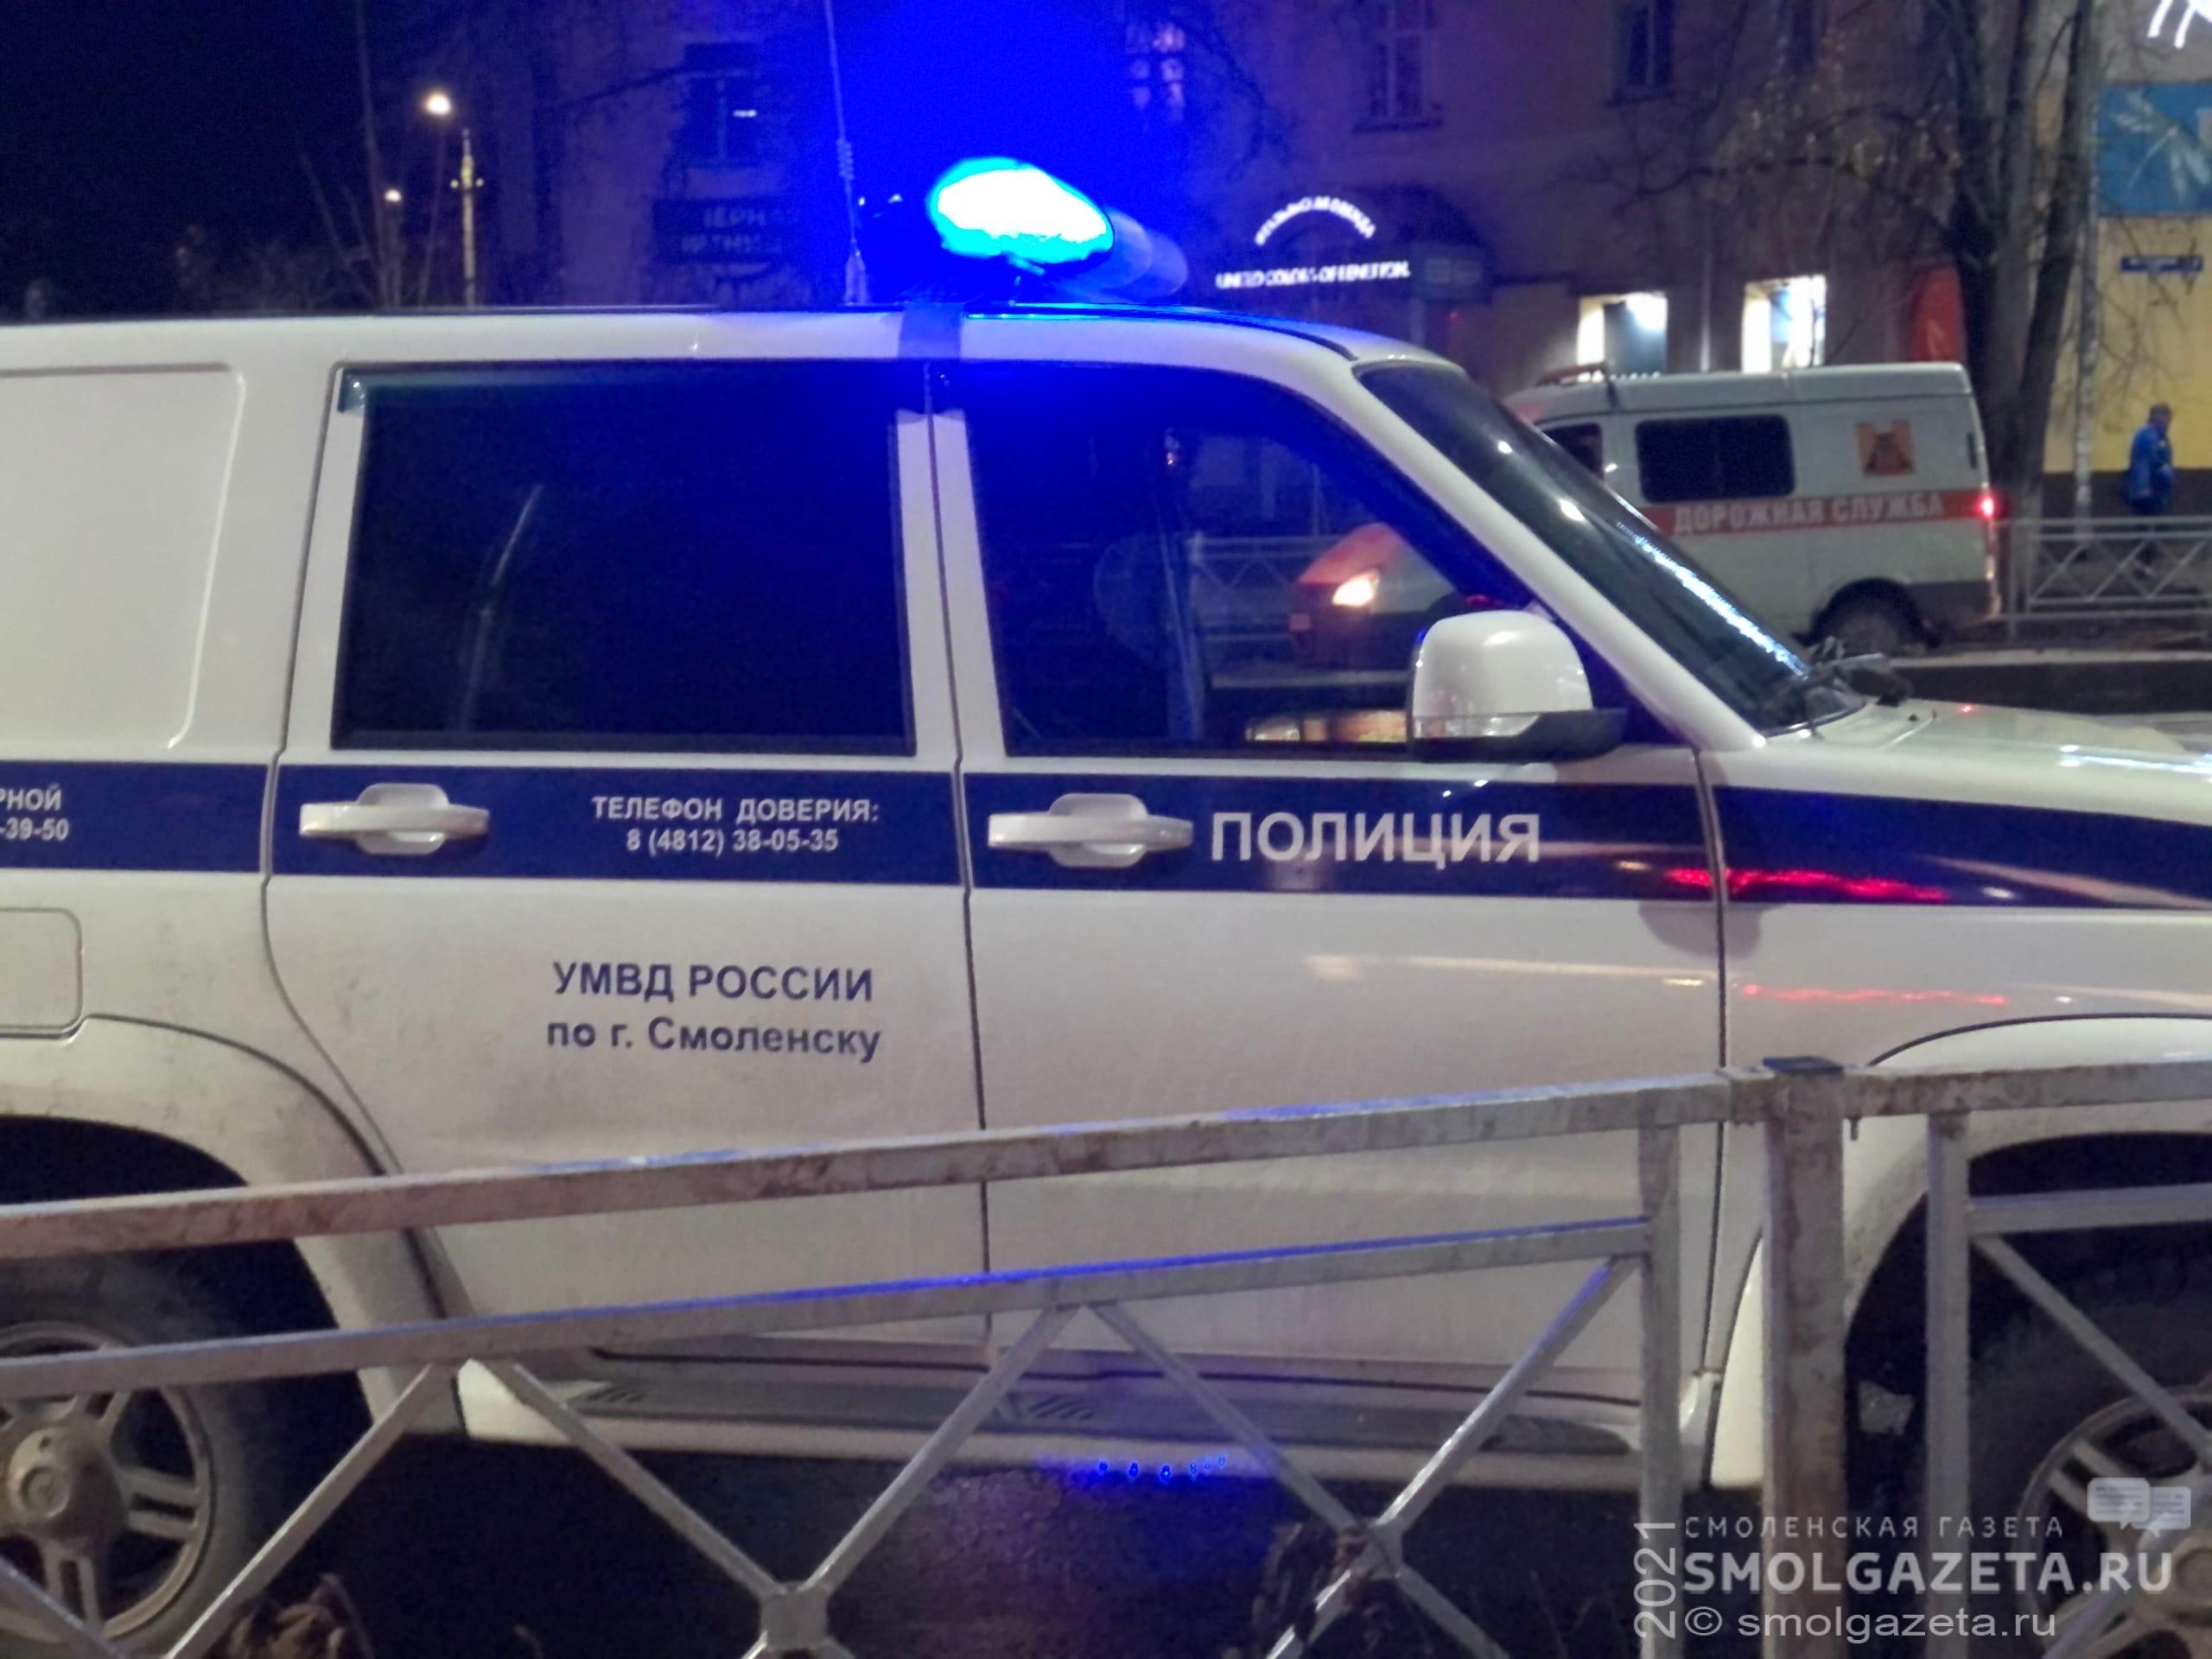 1225 нарушений ПДД выявили в Смоленской области за прошедшие выходные дни